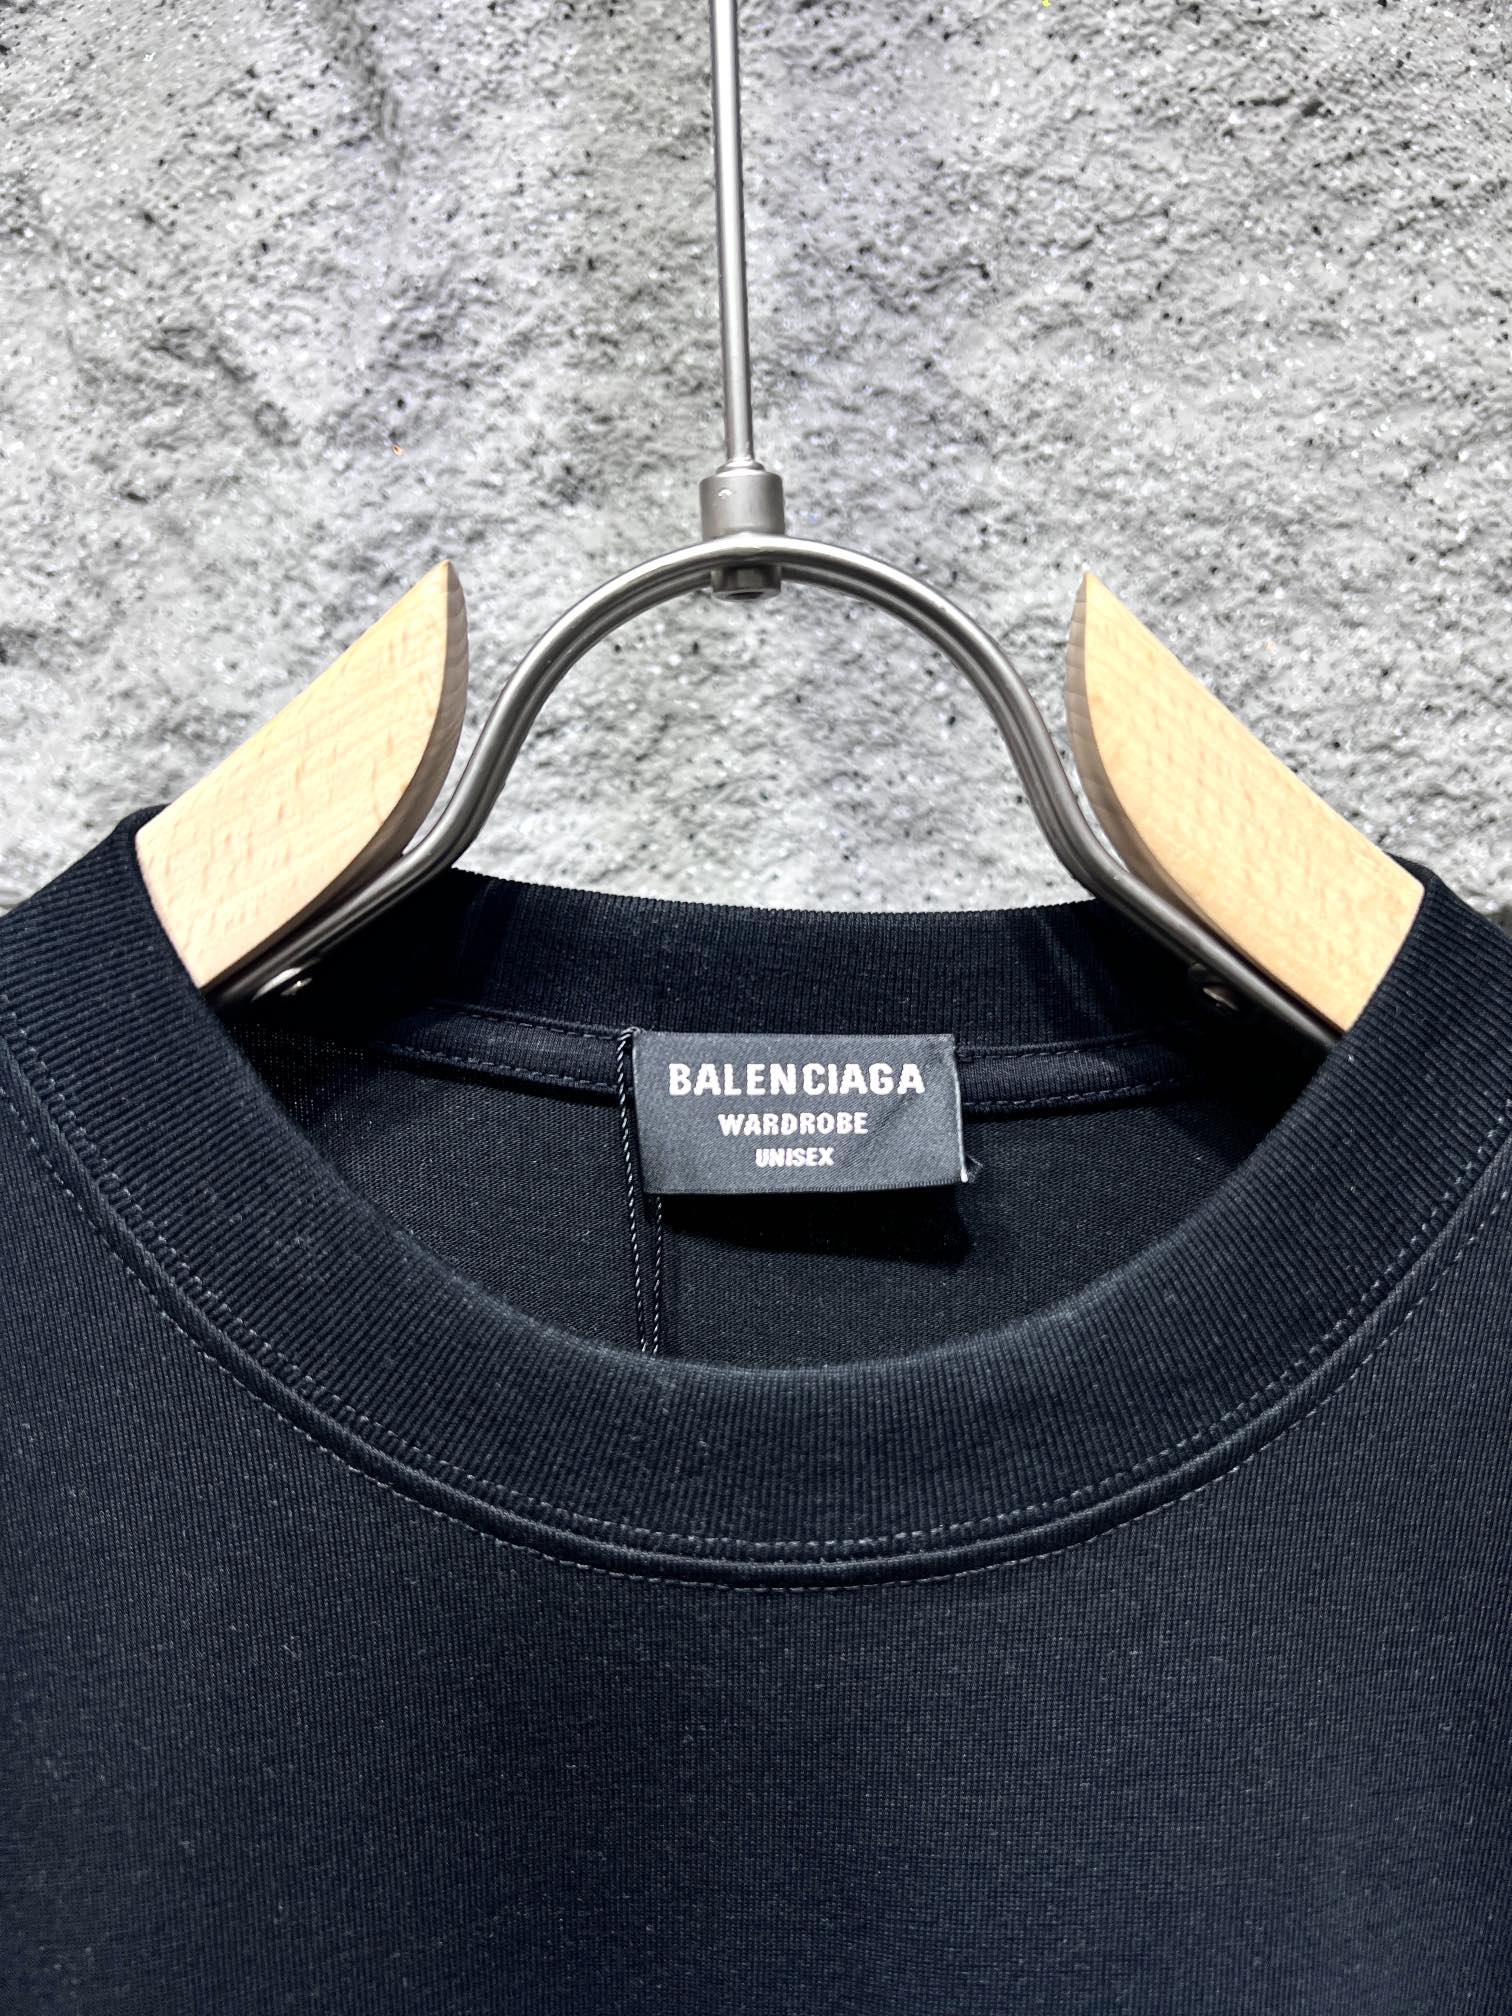 一番安い バレンシアガtシャツ メンズスーパーコピー 純綿 トップス 半袖 Balenciaga*EREWHONコラボ ファッション ブラック_2